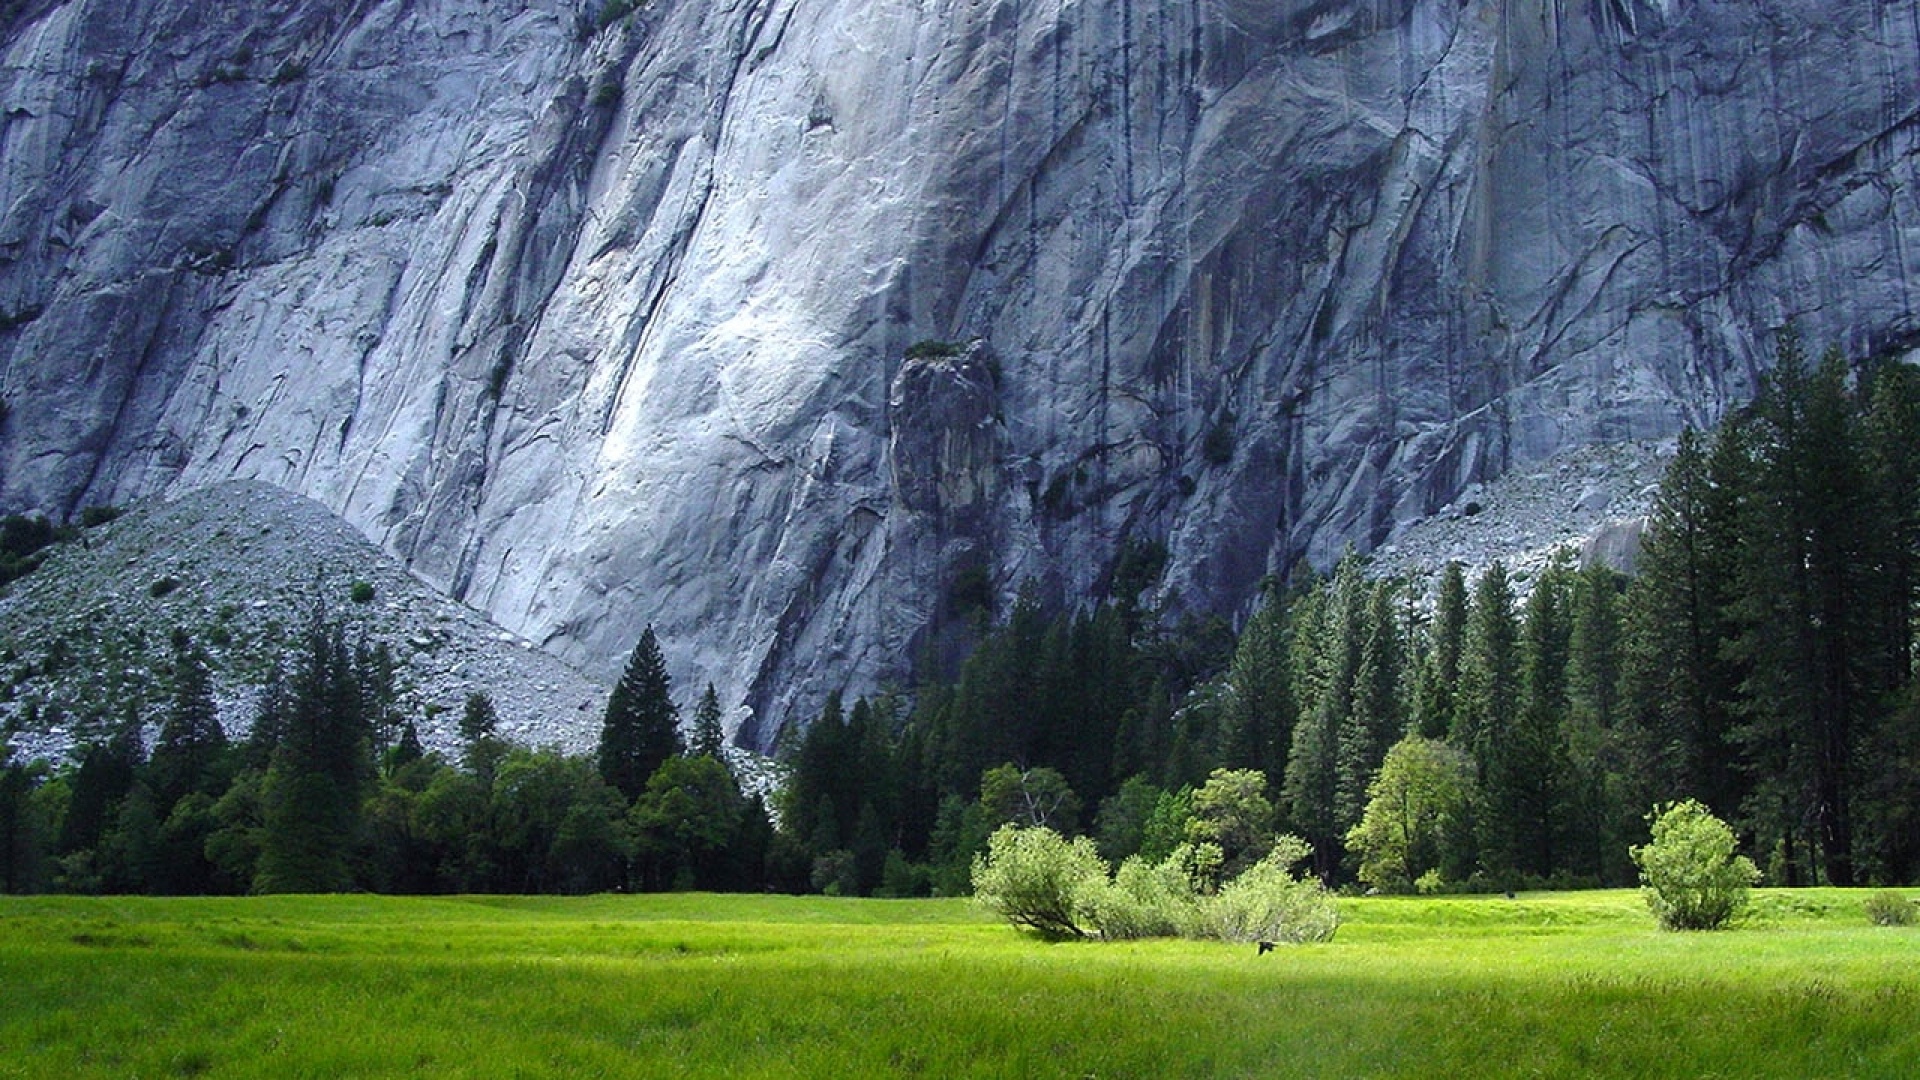 1920x1080 Yosemite National Park Scenery desktop PC and Mac wallpaper